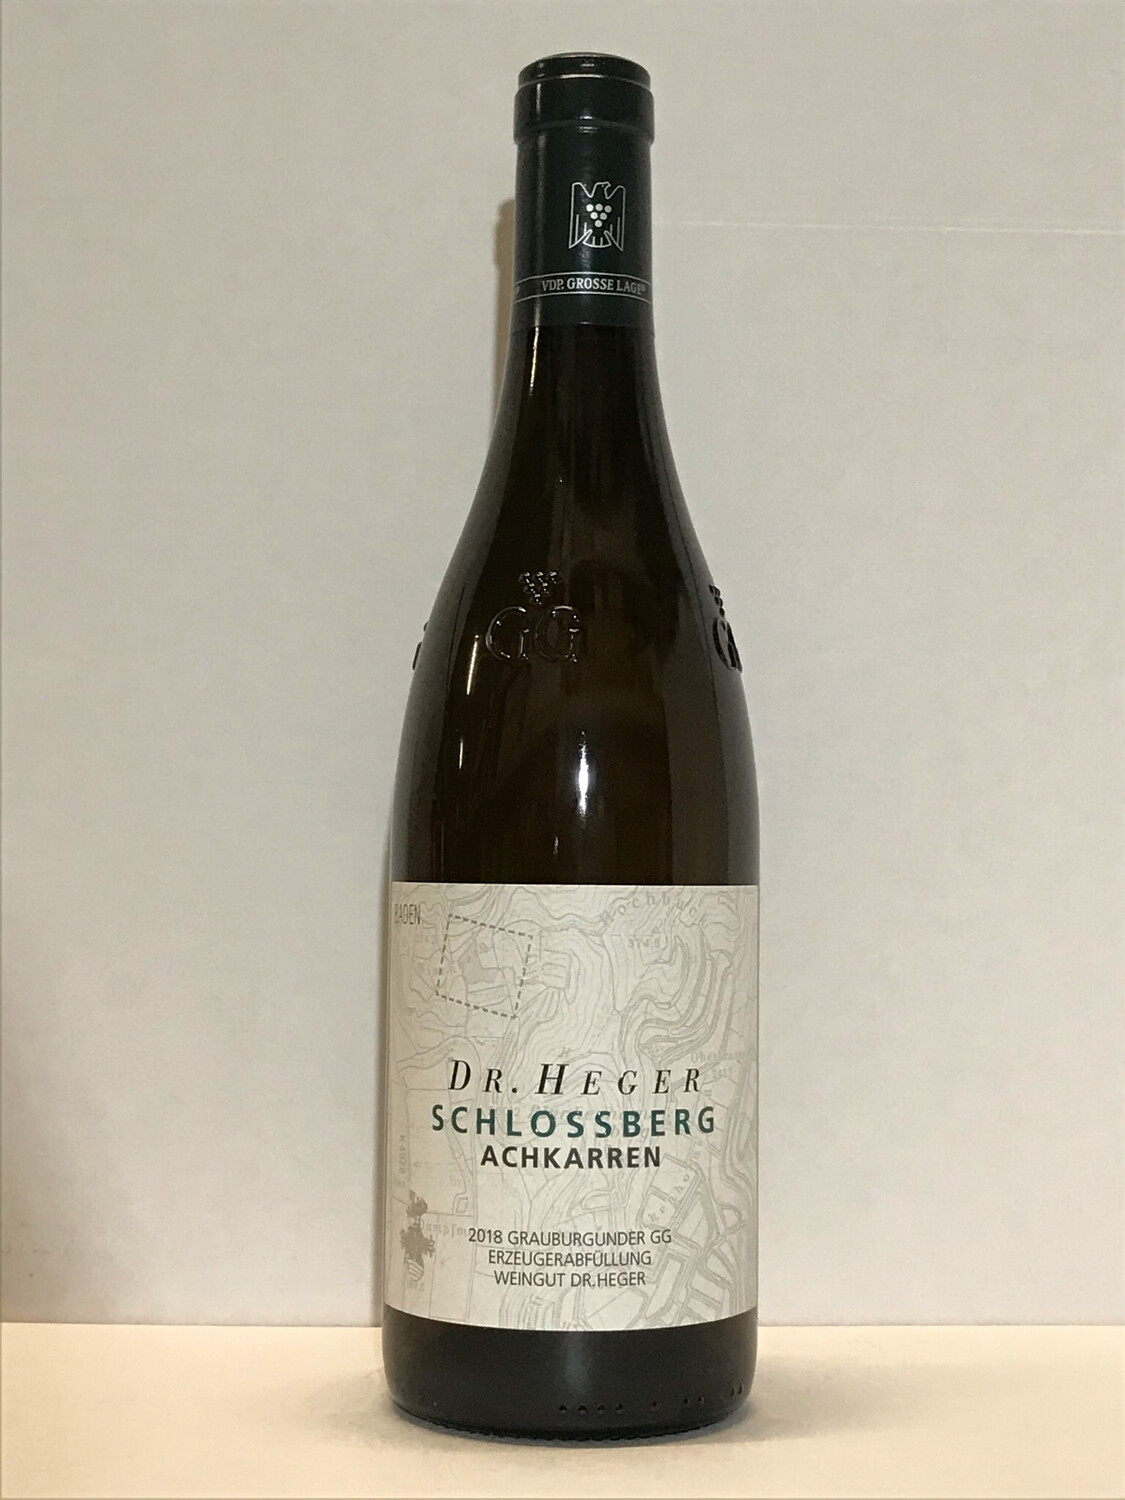 Pinot gris-Grosses Gewächs-2018 droog Achkarren Schlossberg-Dr. Heger (Baden)